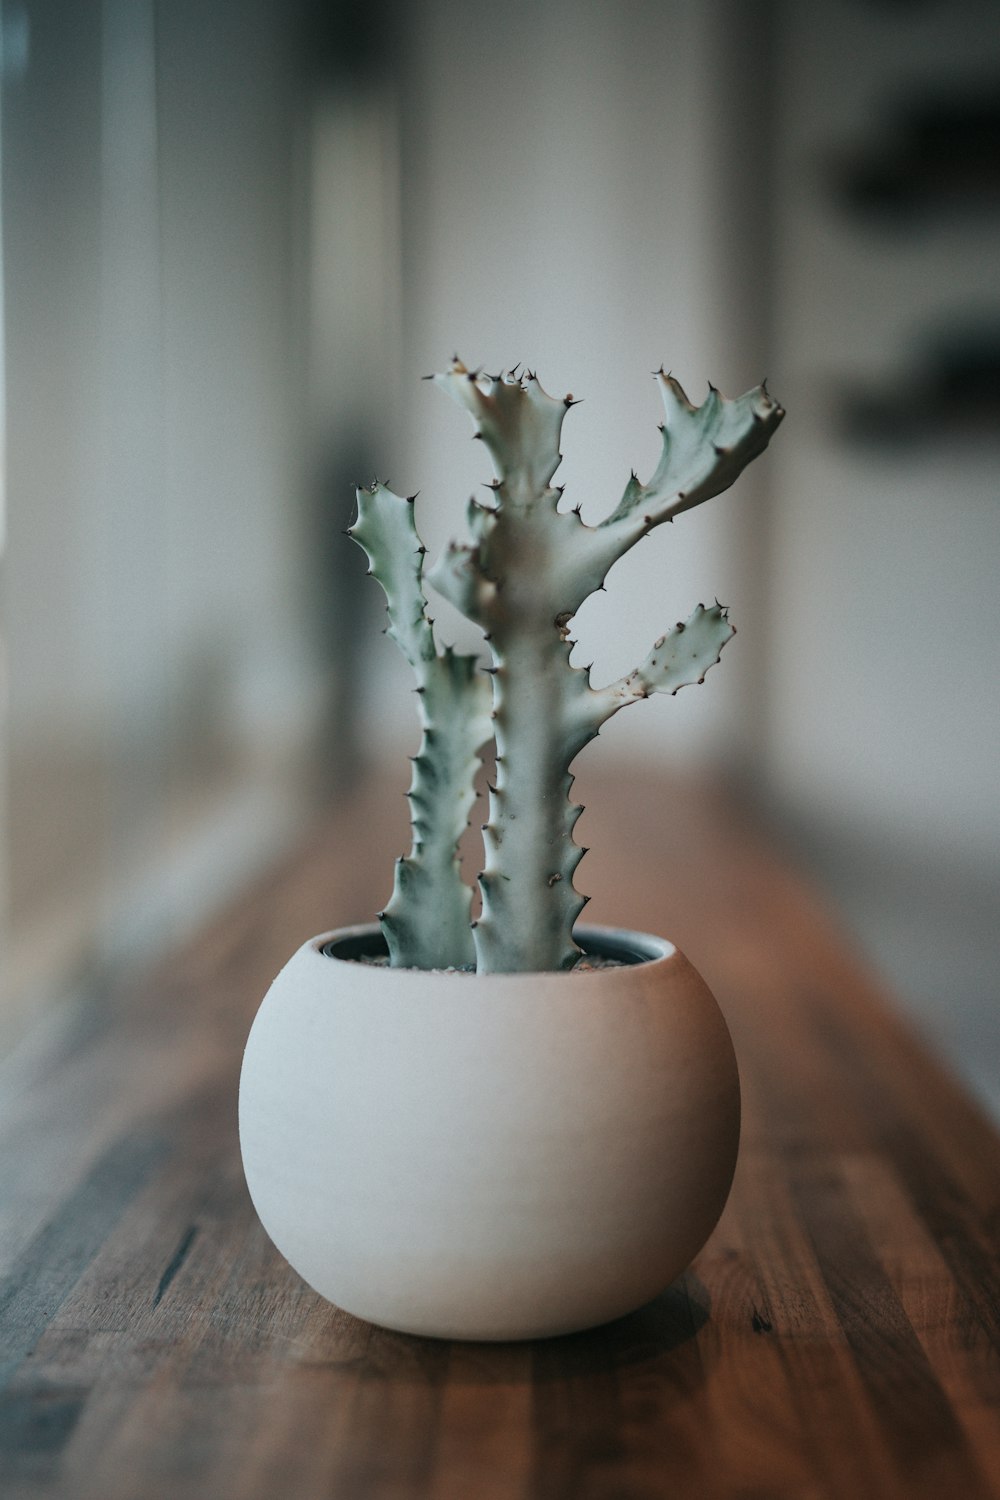 foto in scala di grigi di cactus